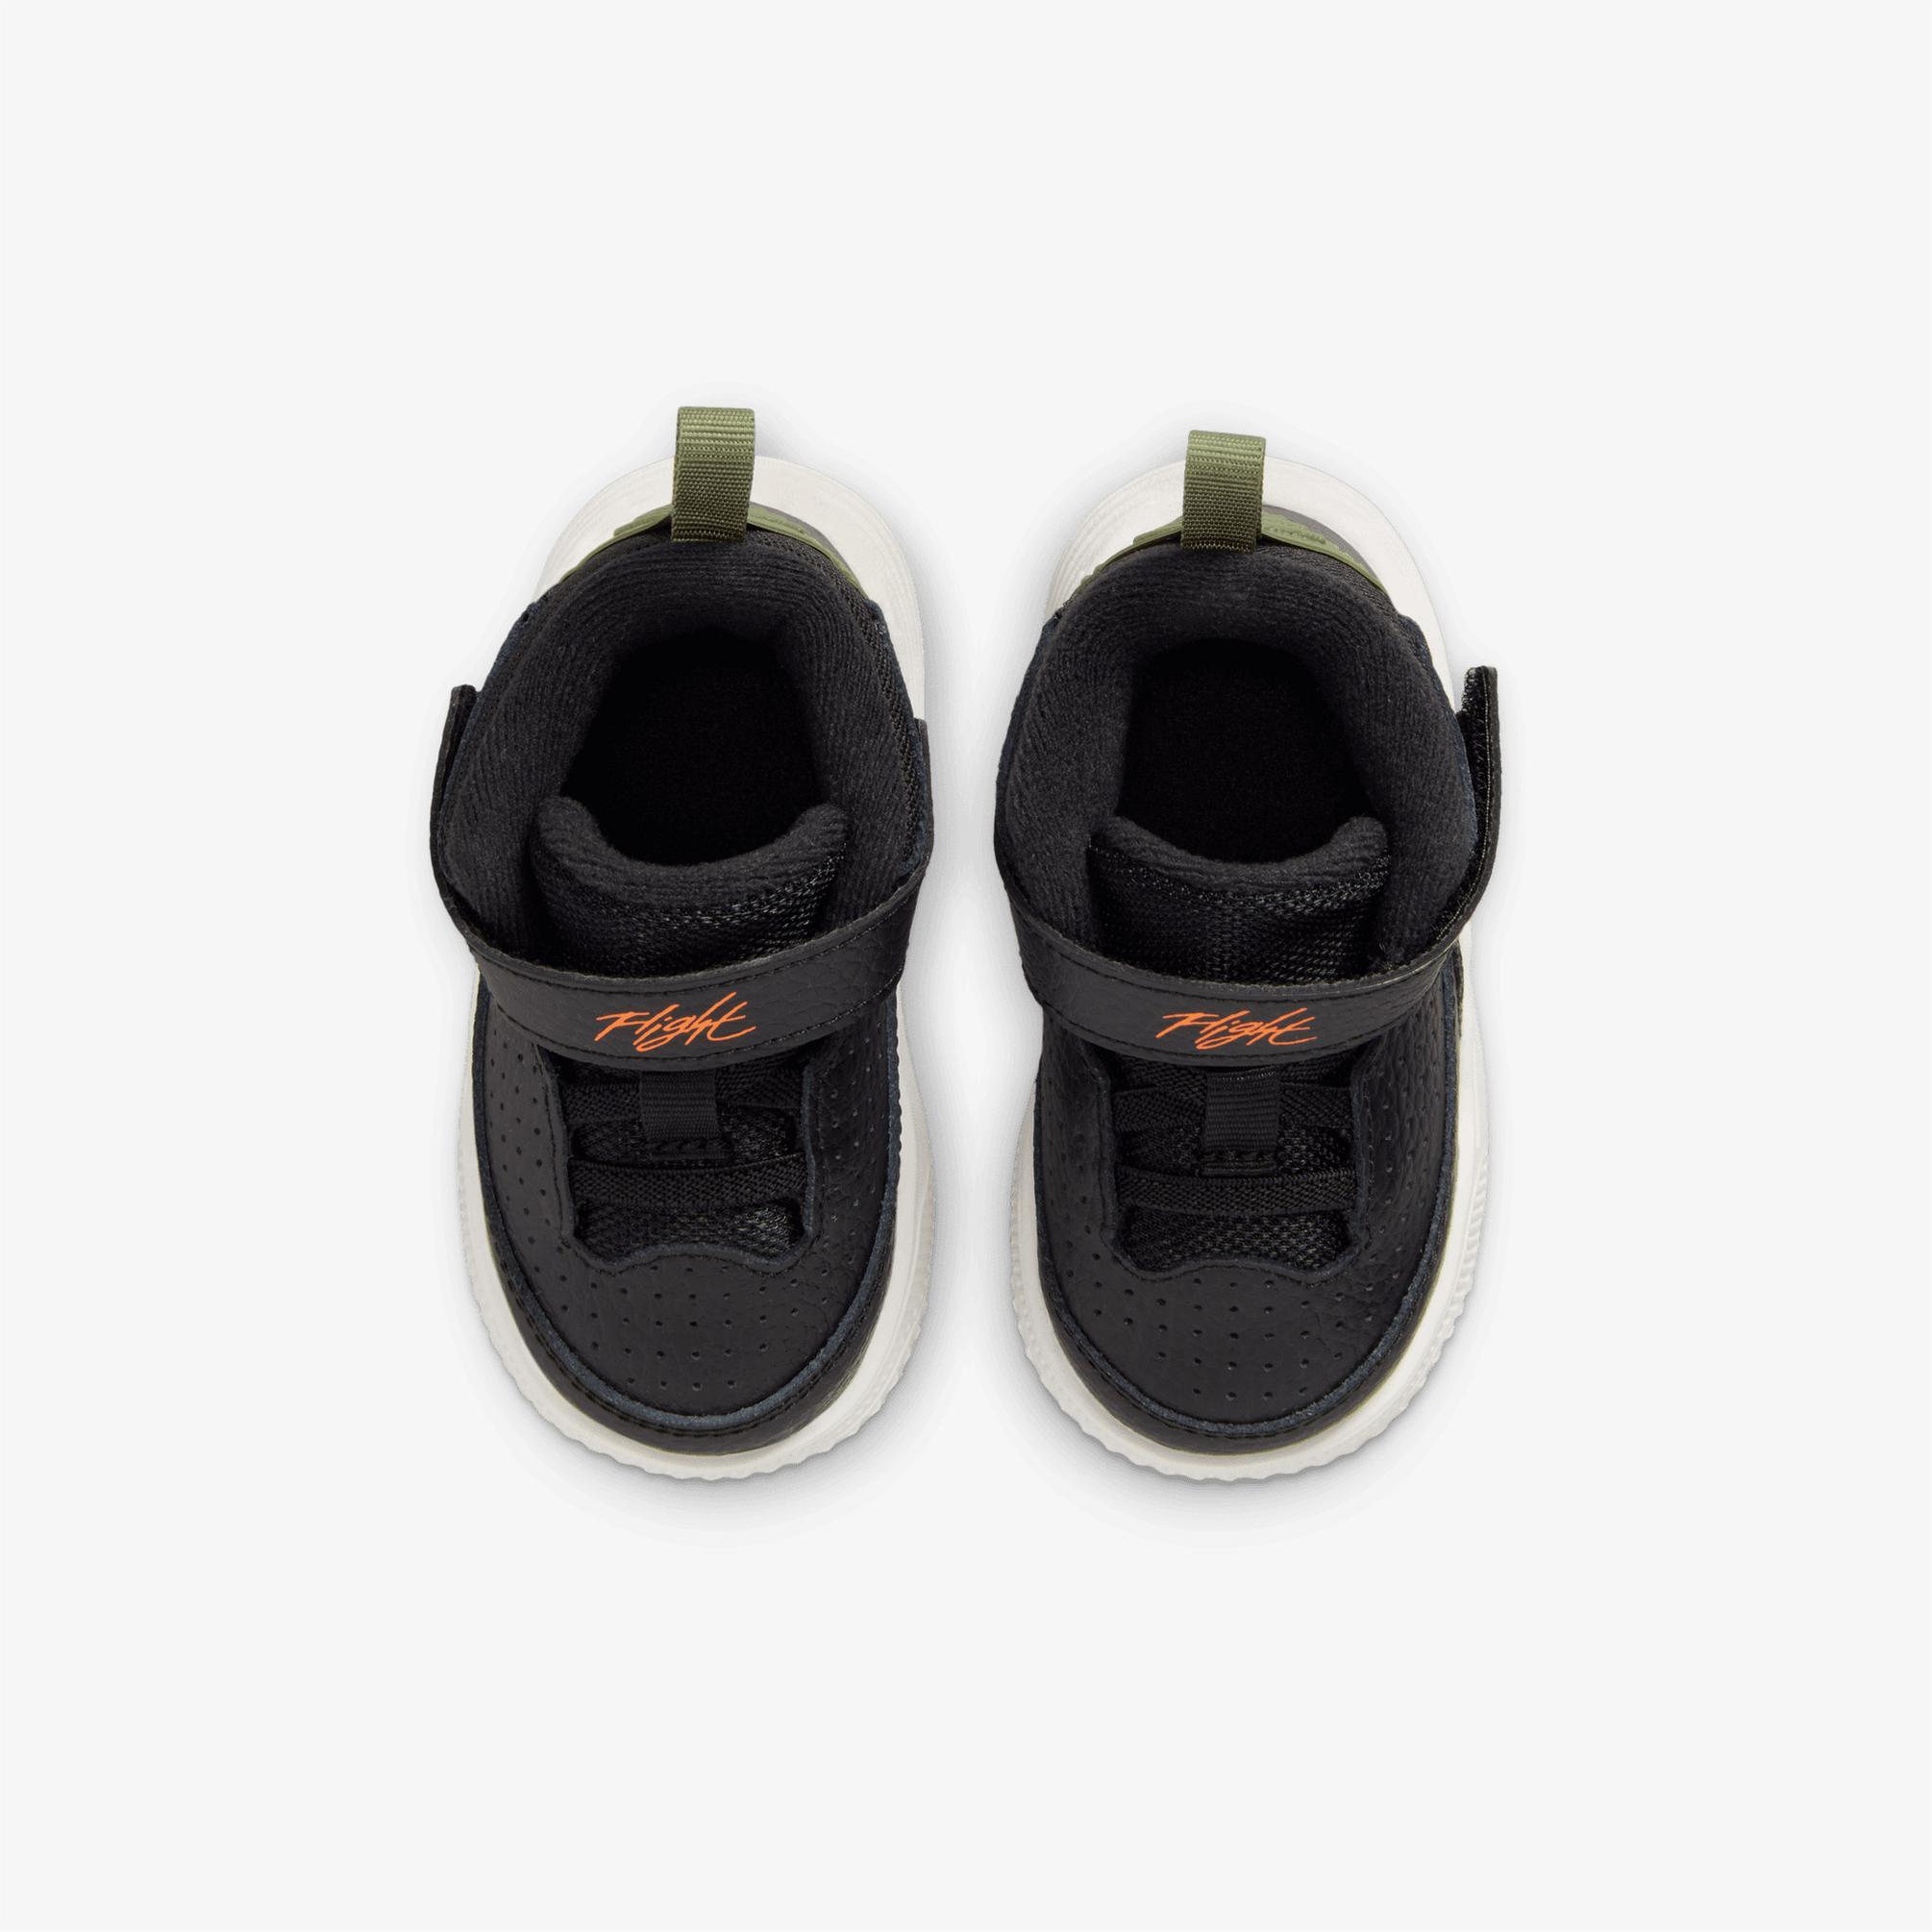  Jordan Max Aura 5 Bebek Siyah Spor Ayakkabı